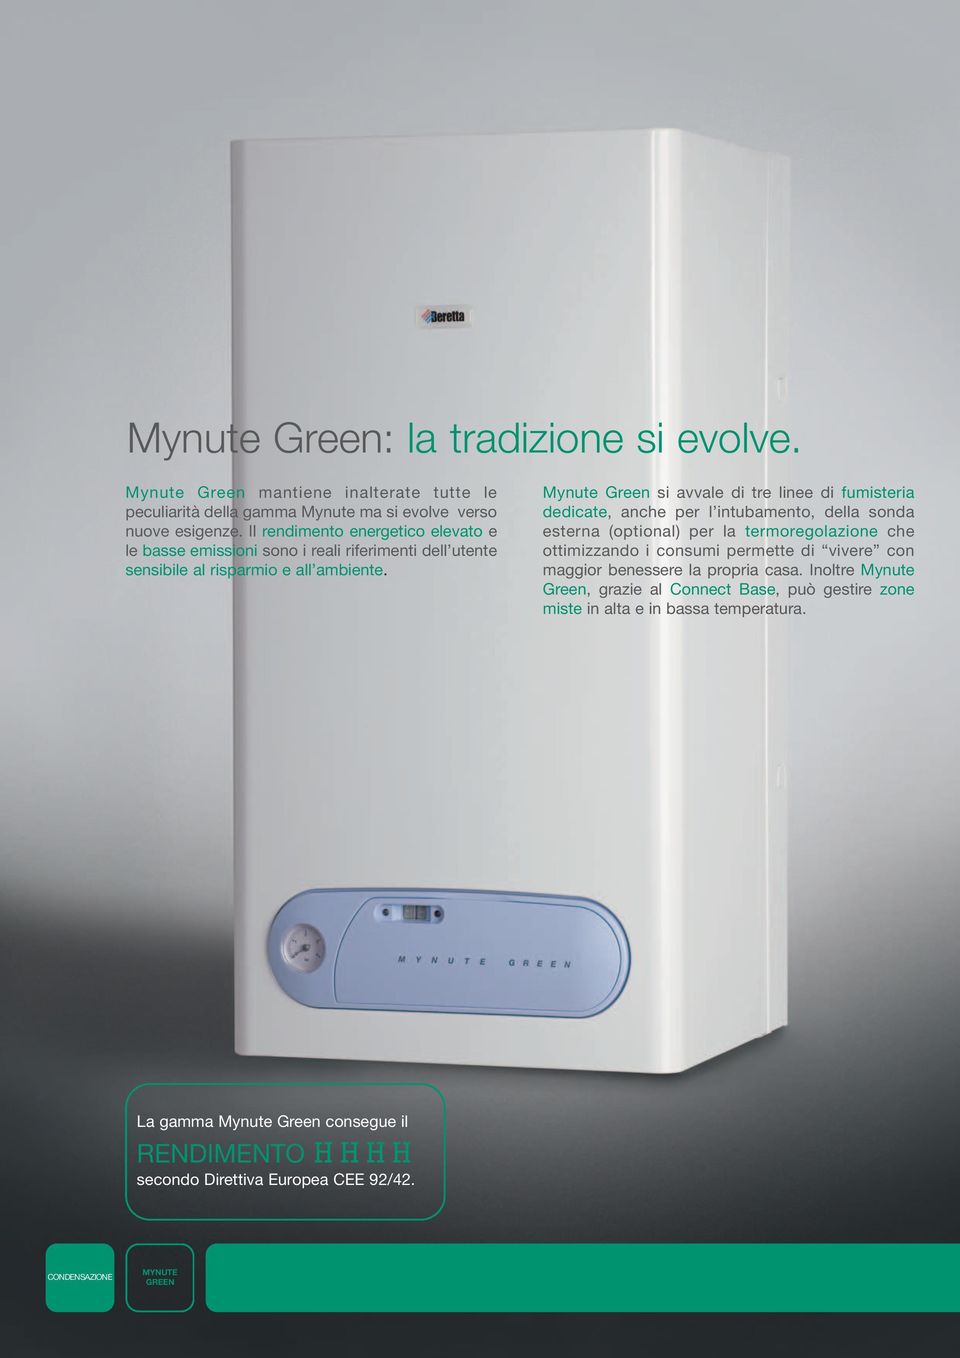 Mynute Green si avvale di tre linee di fumisteria dedicate, anche per l intubamento, della sonda esterna (optional) per la termoregolazione che ottimizzando i consumi permette di